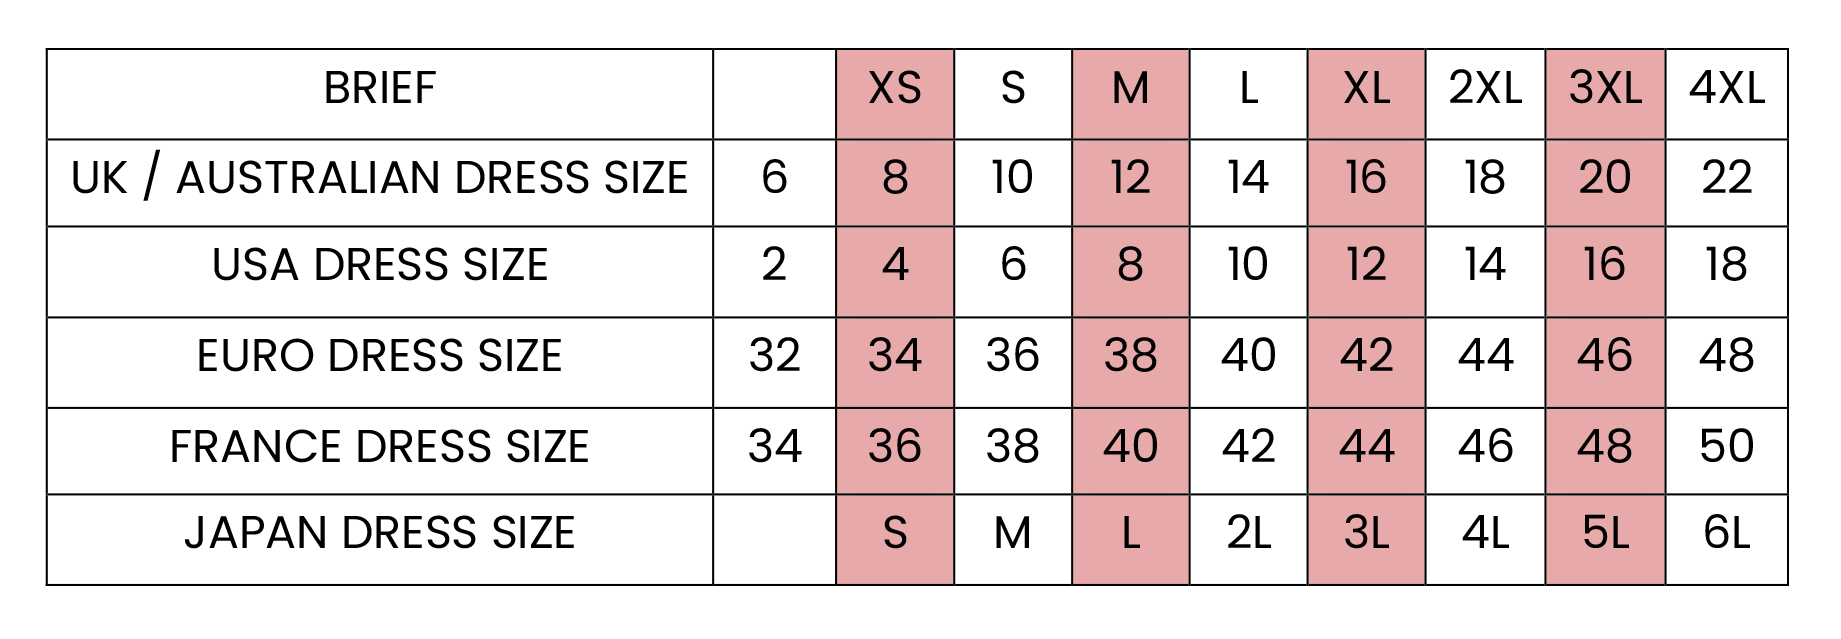 Bra Size Guide, Bras Size Calculator